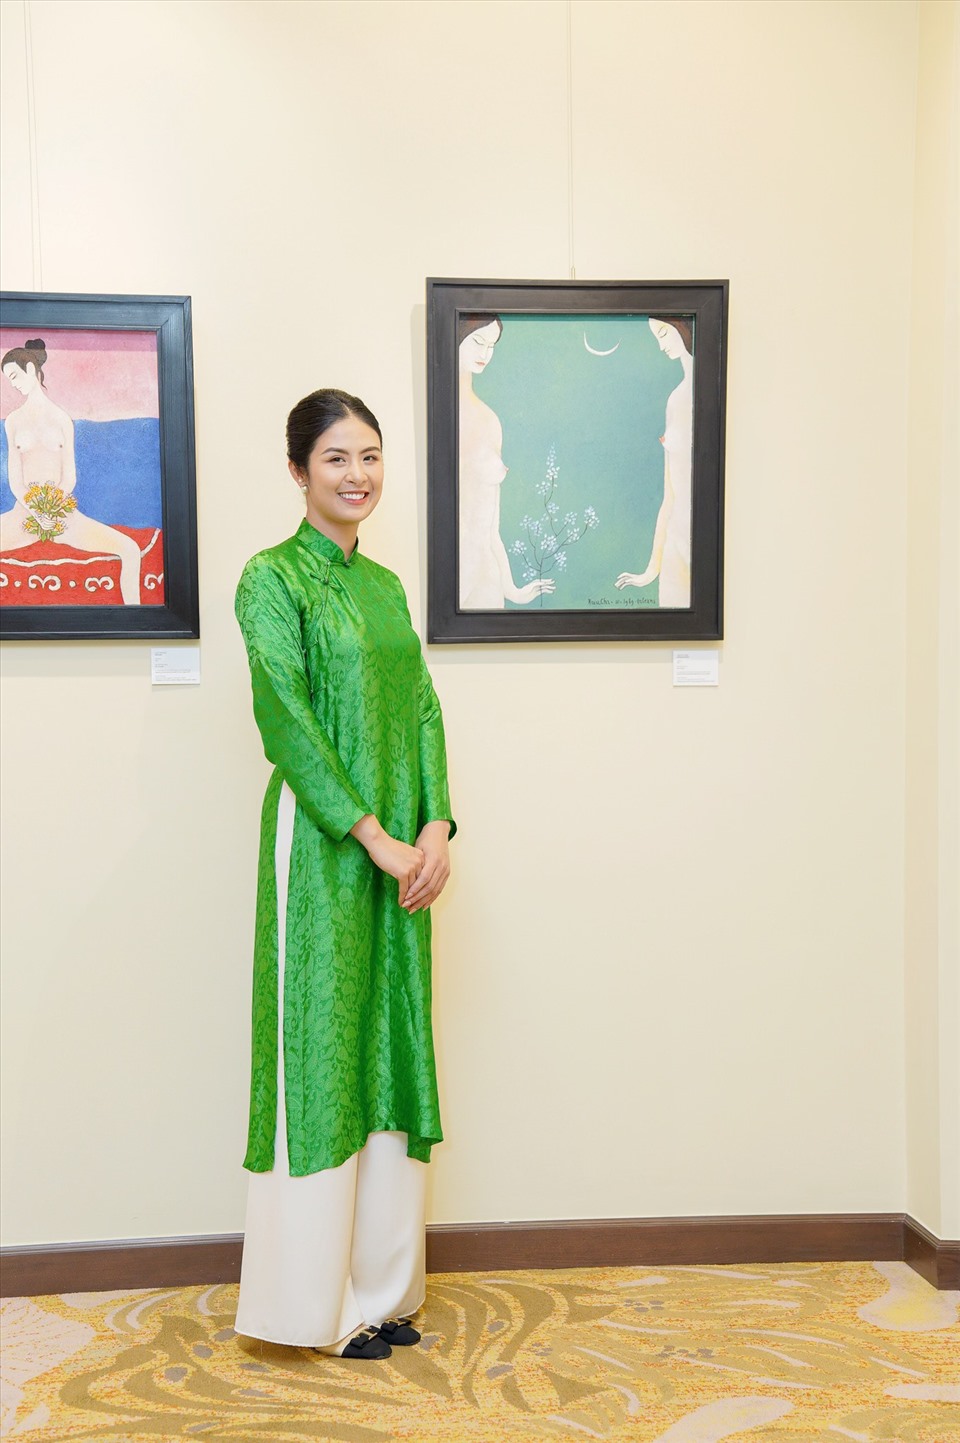 Hoa hậu Ngọc Hân vừa đảm nhận vai trò MC đồng thời là BTC của triển lãm tranh “Tay níu thời gian” nhân kỷ niệm 20 năm ngày mất họa sĩ Bửu Chỉ - một trong những danh họa cô rất yêu thích.